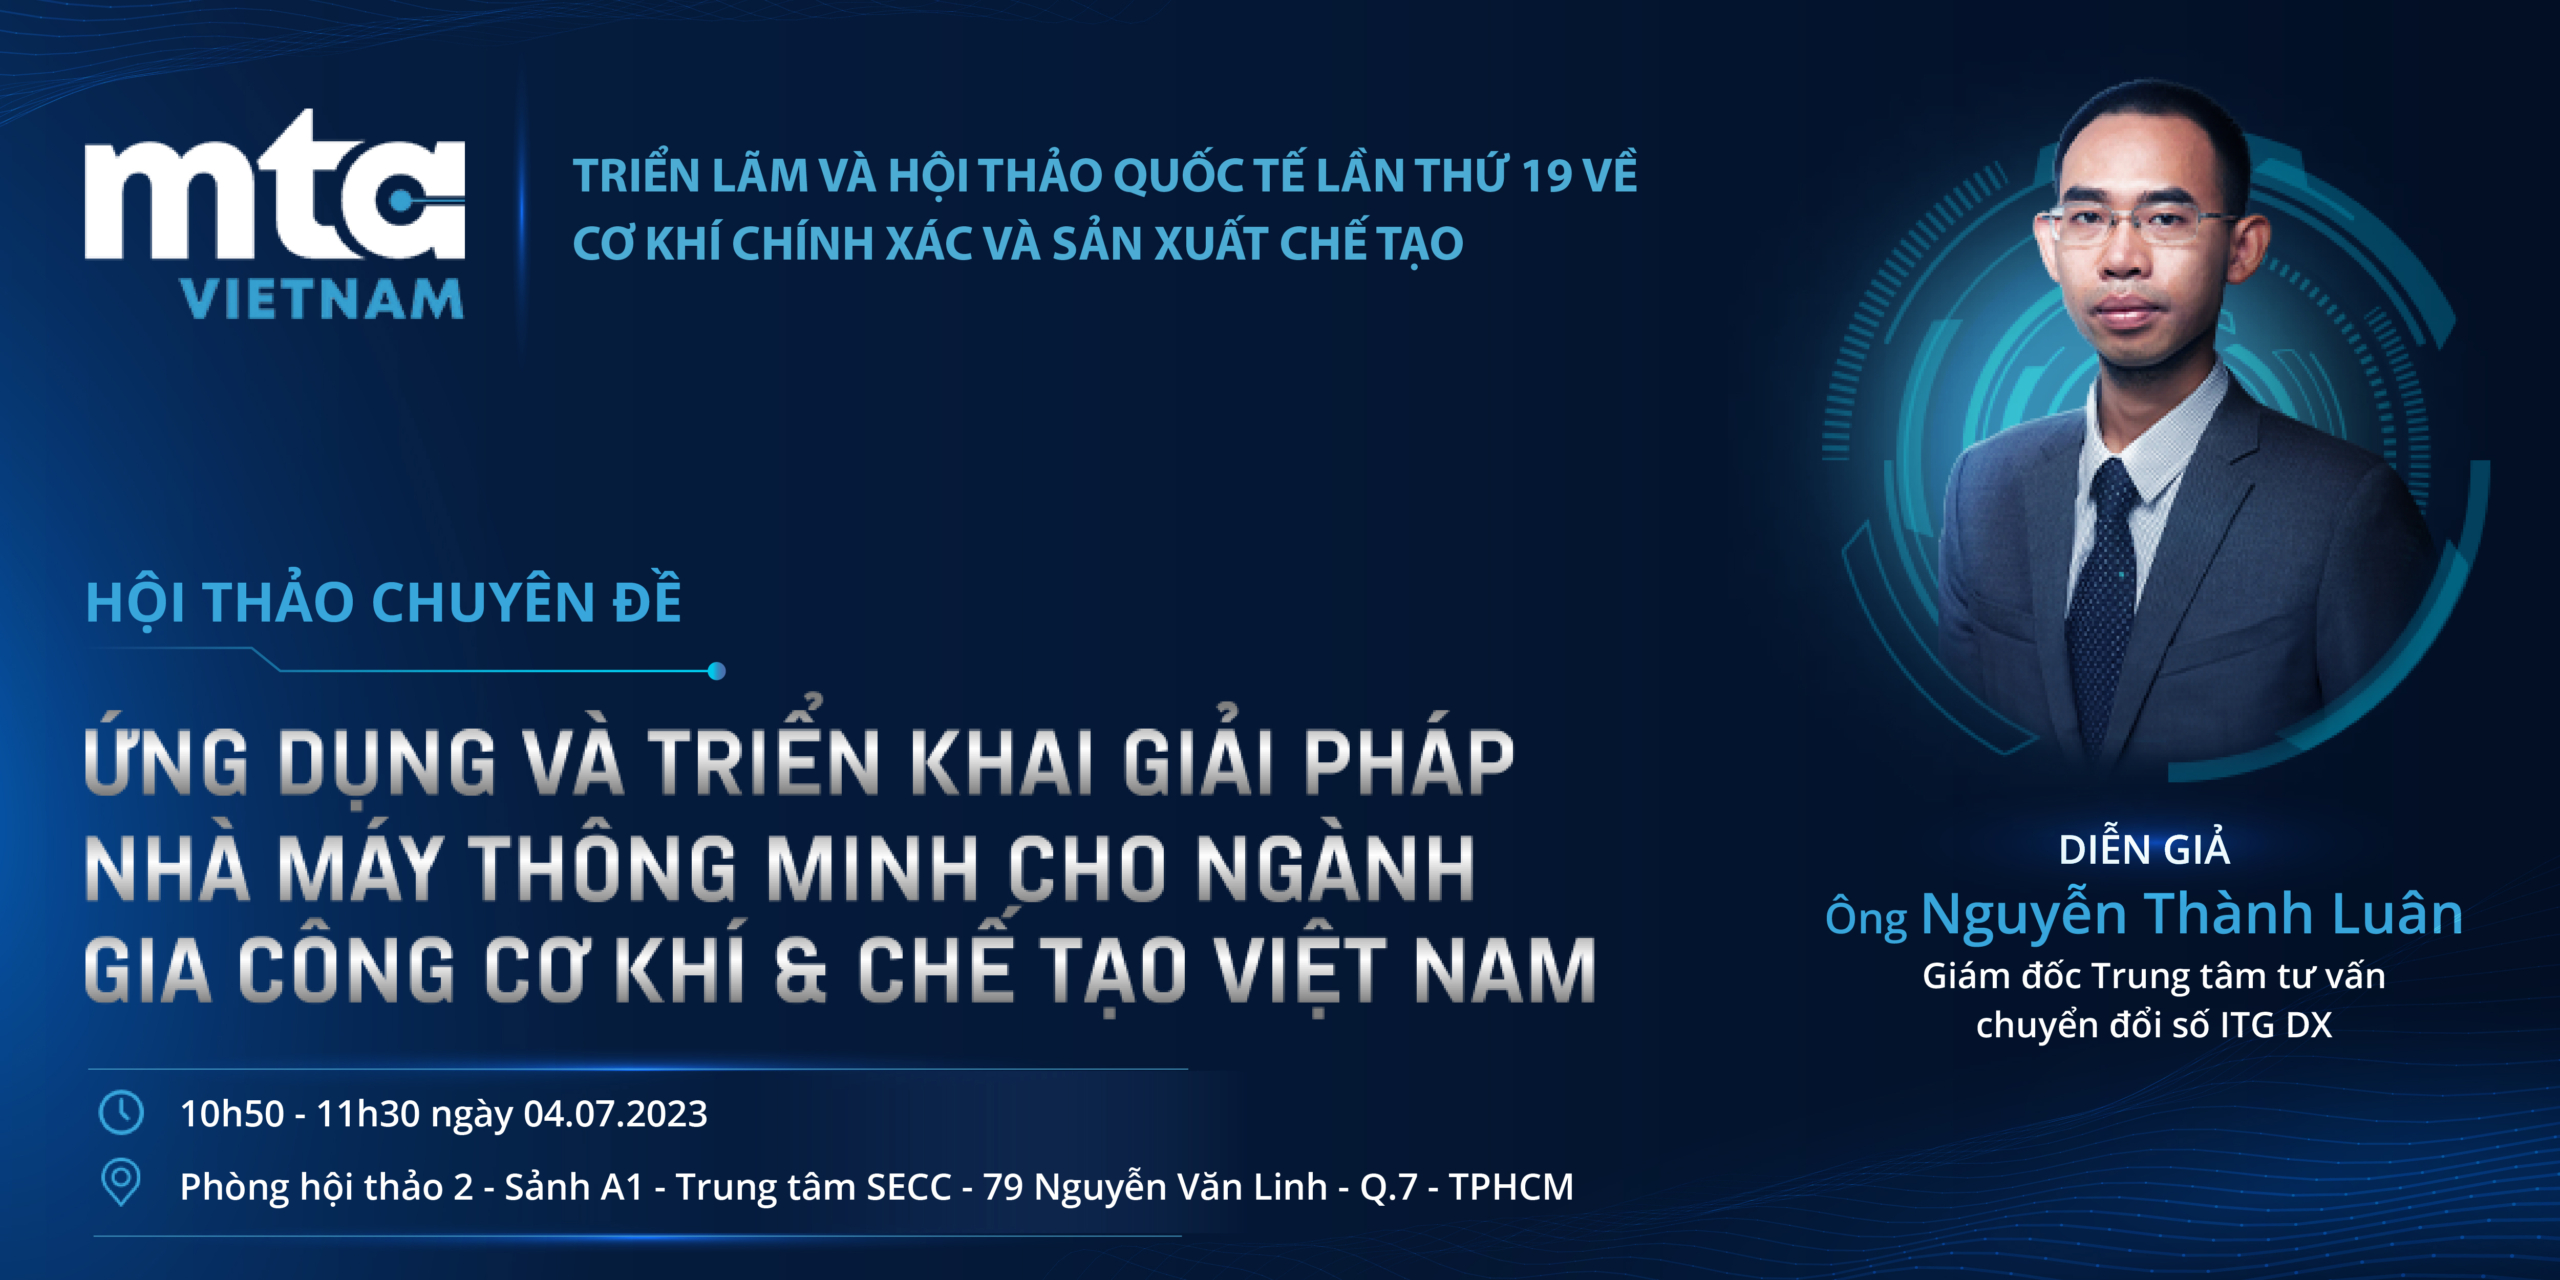 Banner Email 01 01 scaled - Mời tham tham dự hội thảo chuyên đề: “Ứng dụng và triển khai Giải pháp nhà máy thông minh cho ngành gia công Cơ khí & Chế tạo tại Việt Nam”